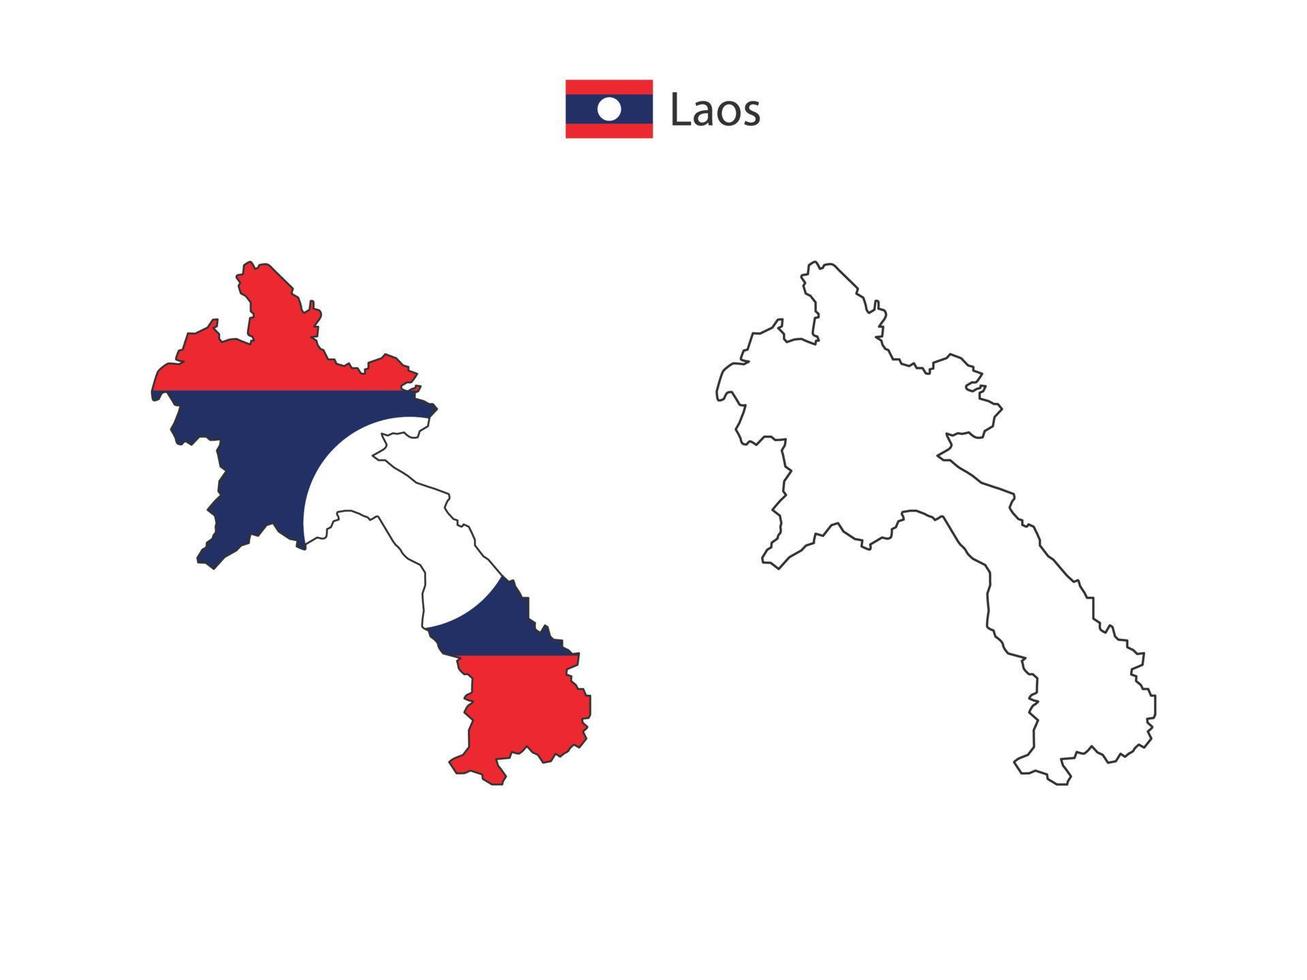 Laos kaart stad vector verdeeld door schets eenvoud stijl. hebben 2 versies, zwart dun lijn versie en kleur van land vlag versie. beide kaart waren Aan de wit achtergrond.